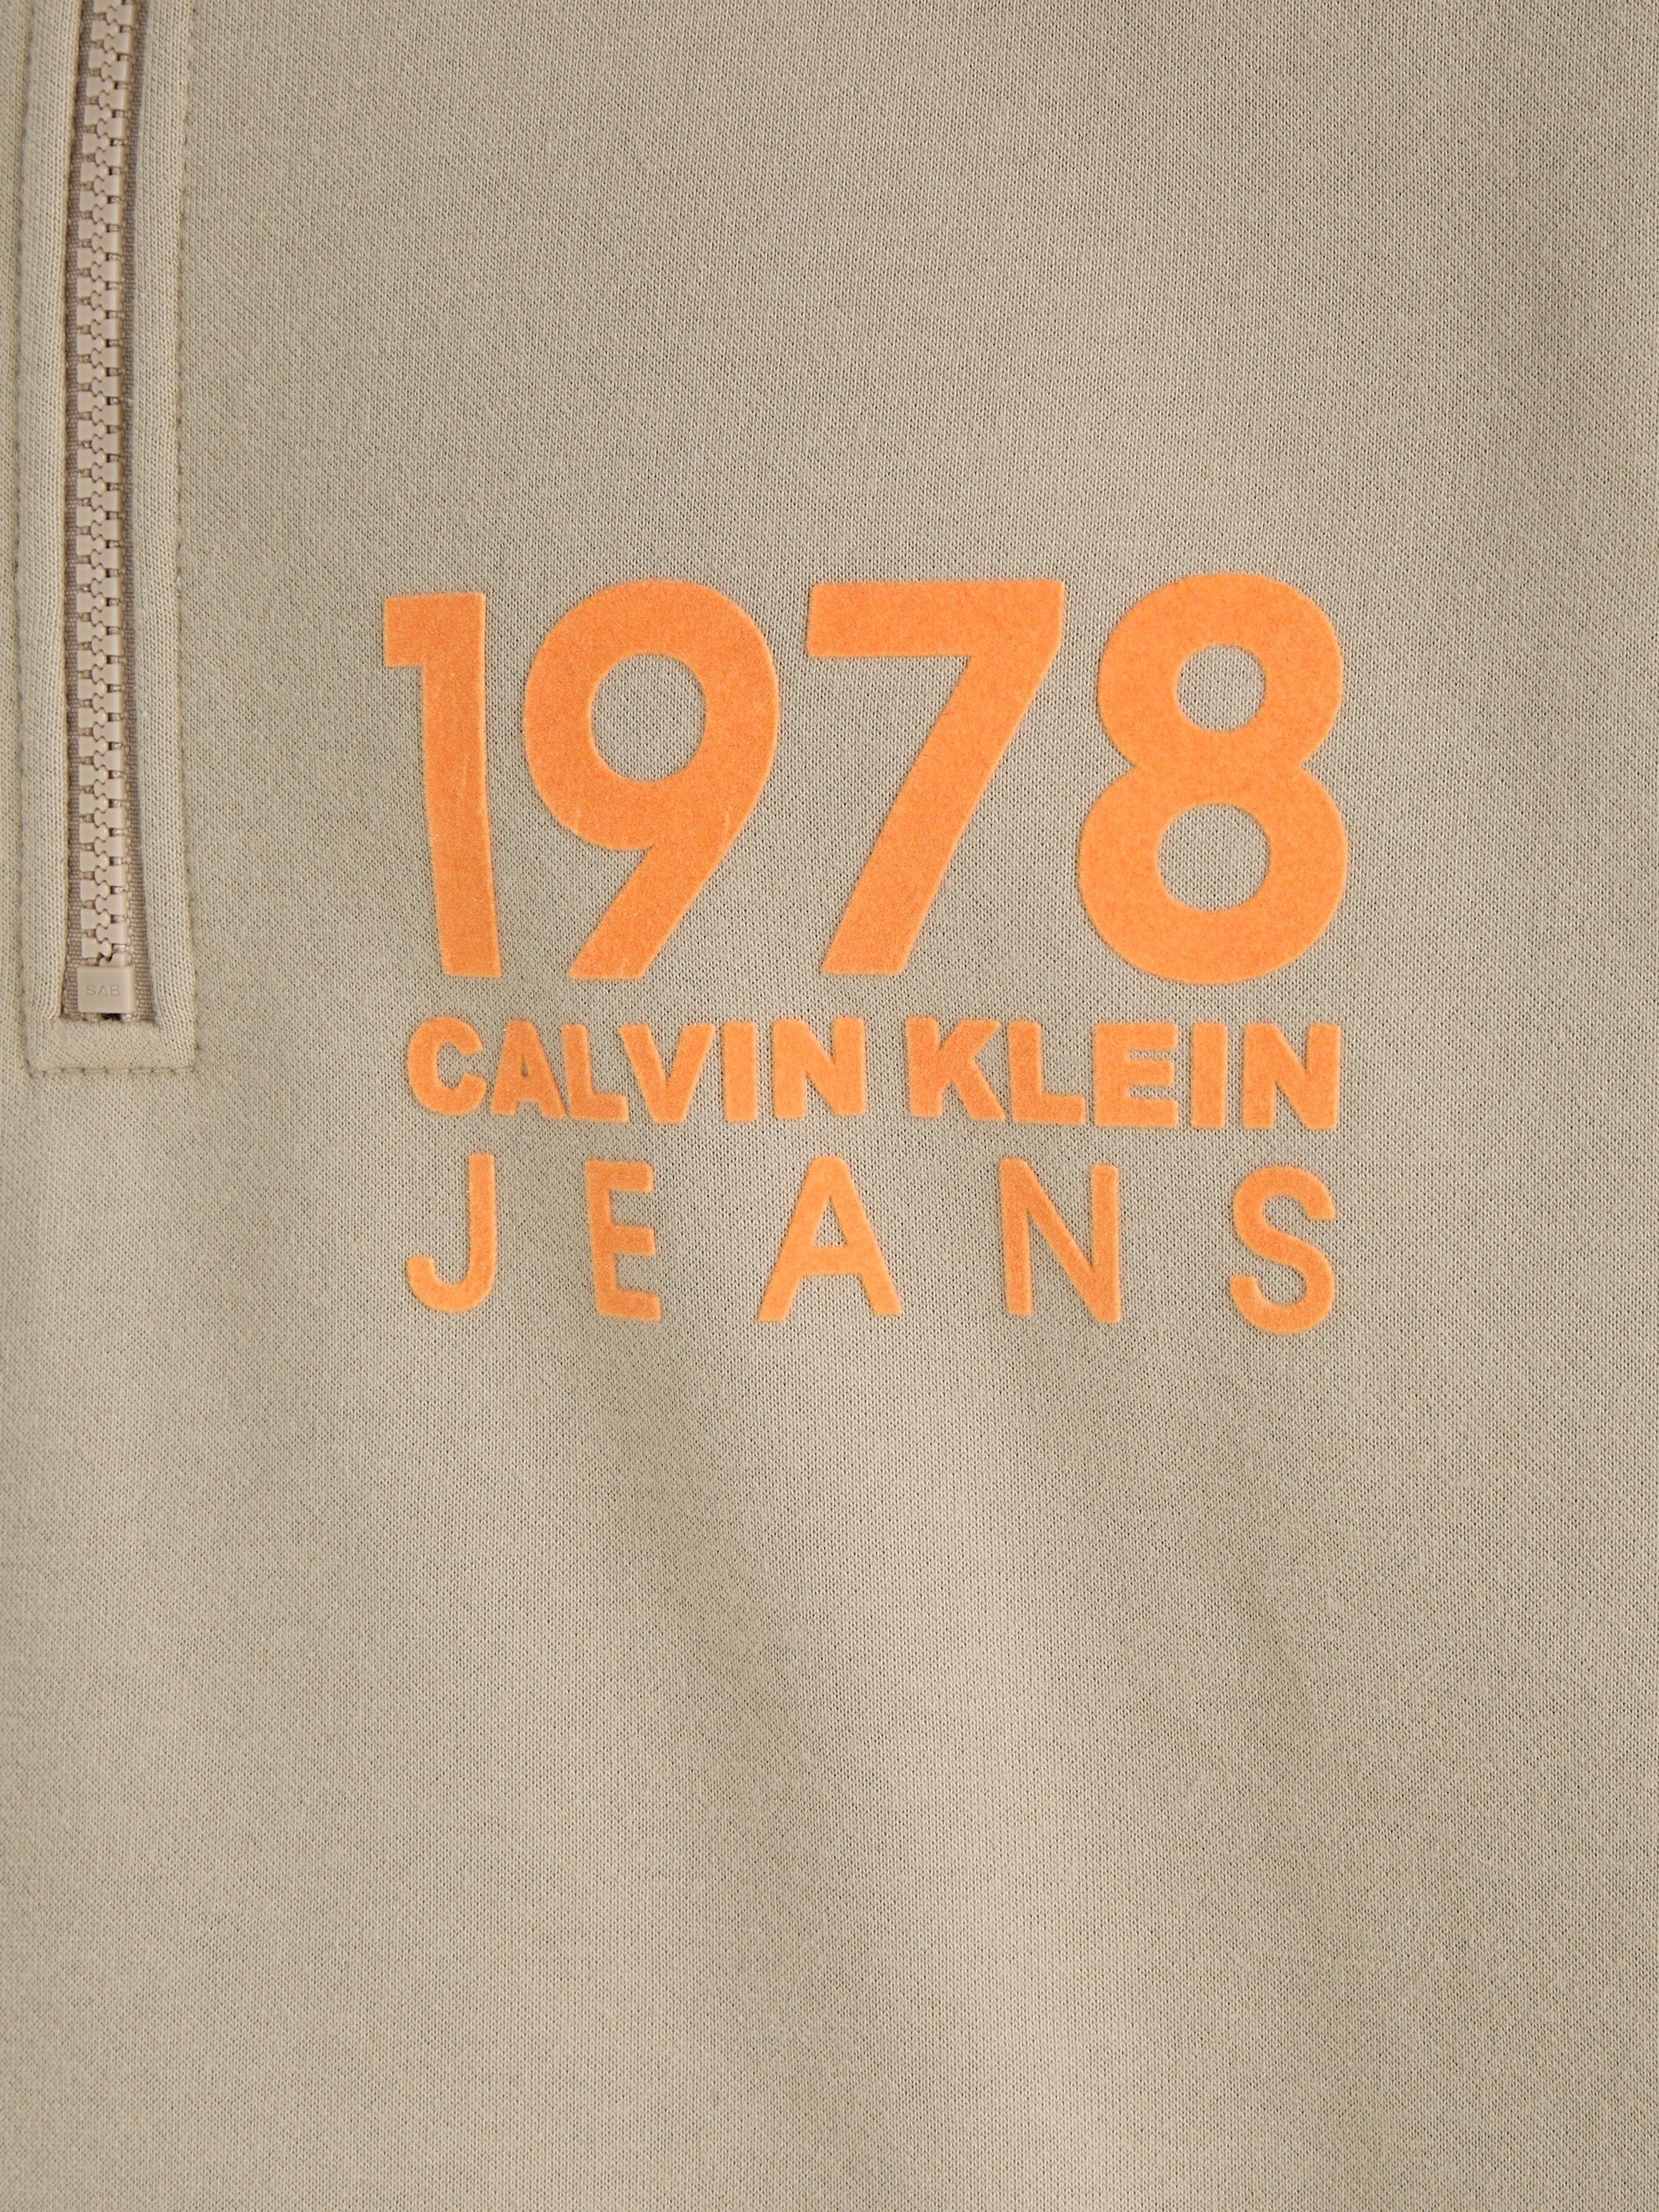 FLOCK Calvin LOGO Jeans Klein HALF 1978 ZIP Sweatshirt